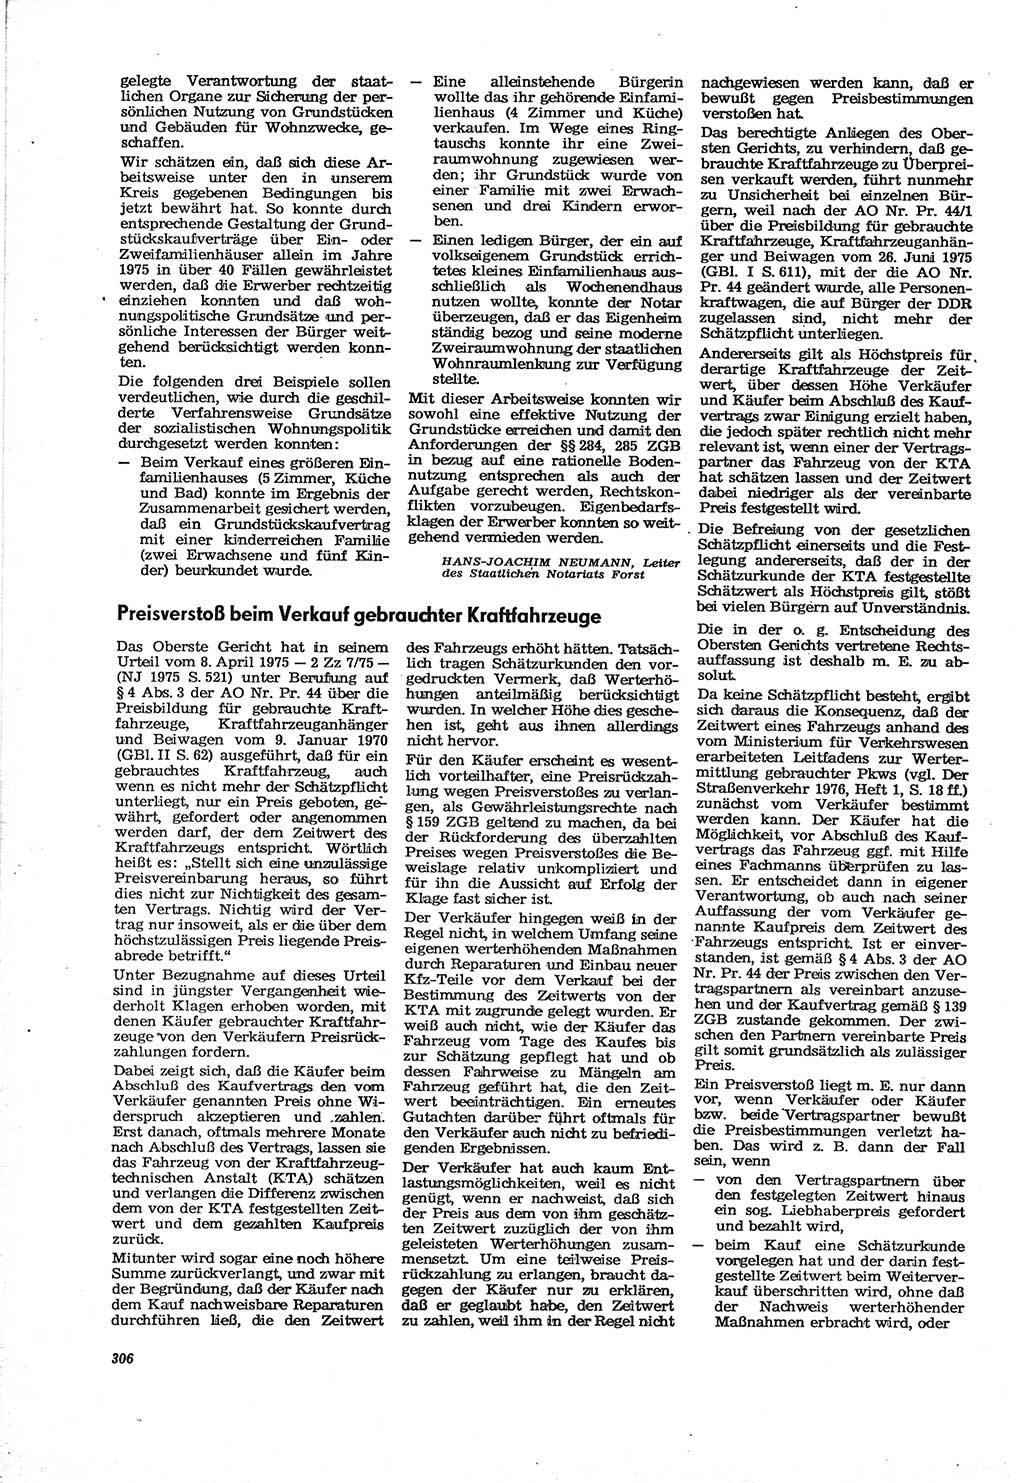 Neue Justiz (NJ), Zeitschrift für Recht und Rechtswissenschaft [Deutsche Demokratische Republik (DDR)], 30. Jahrgang 1976, Seite 306 (NJ DDR 1976, S. 306)